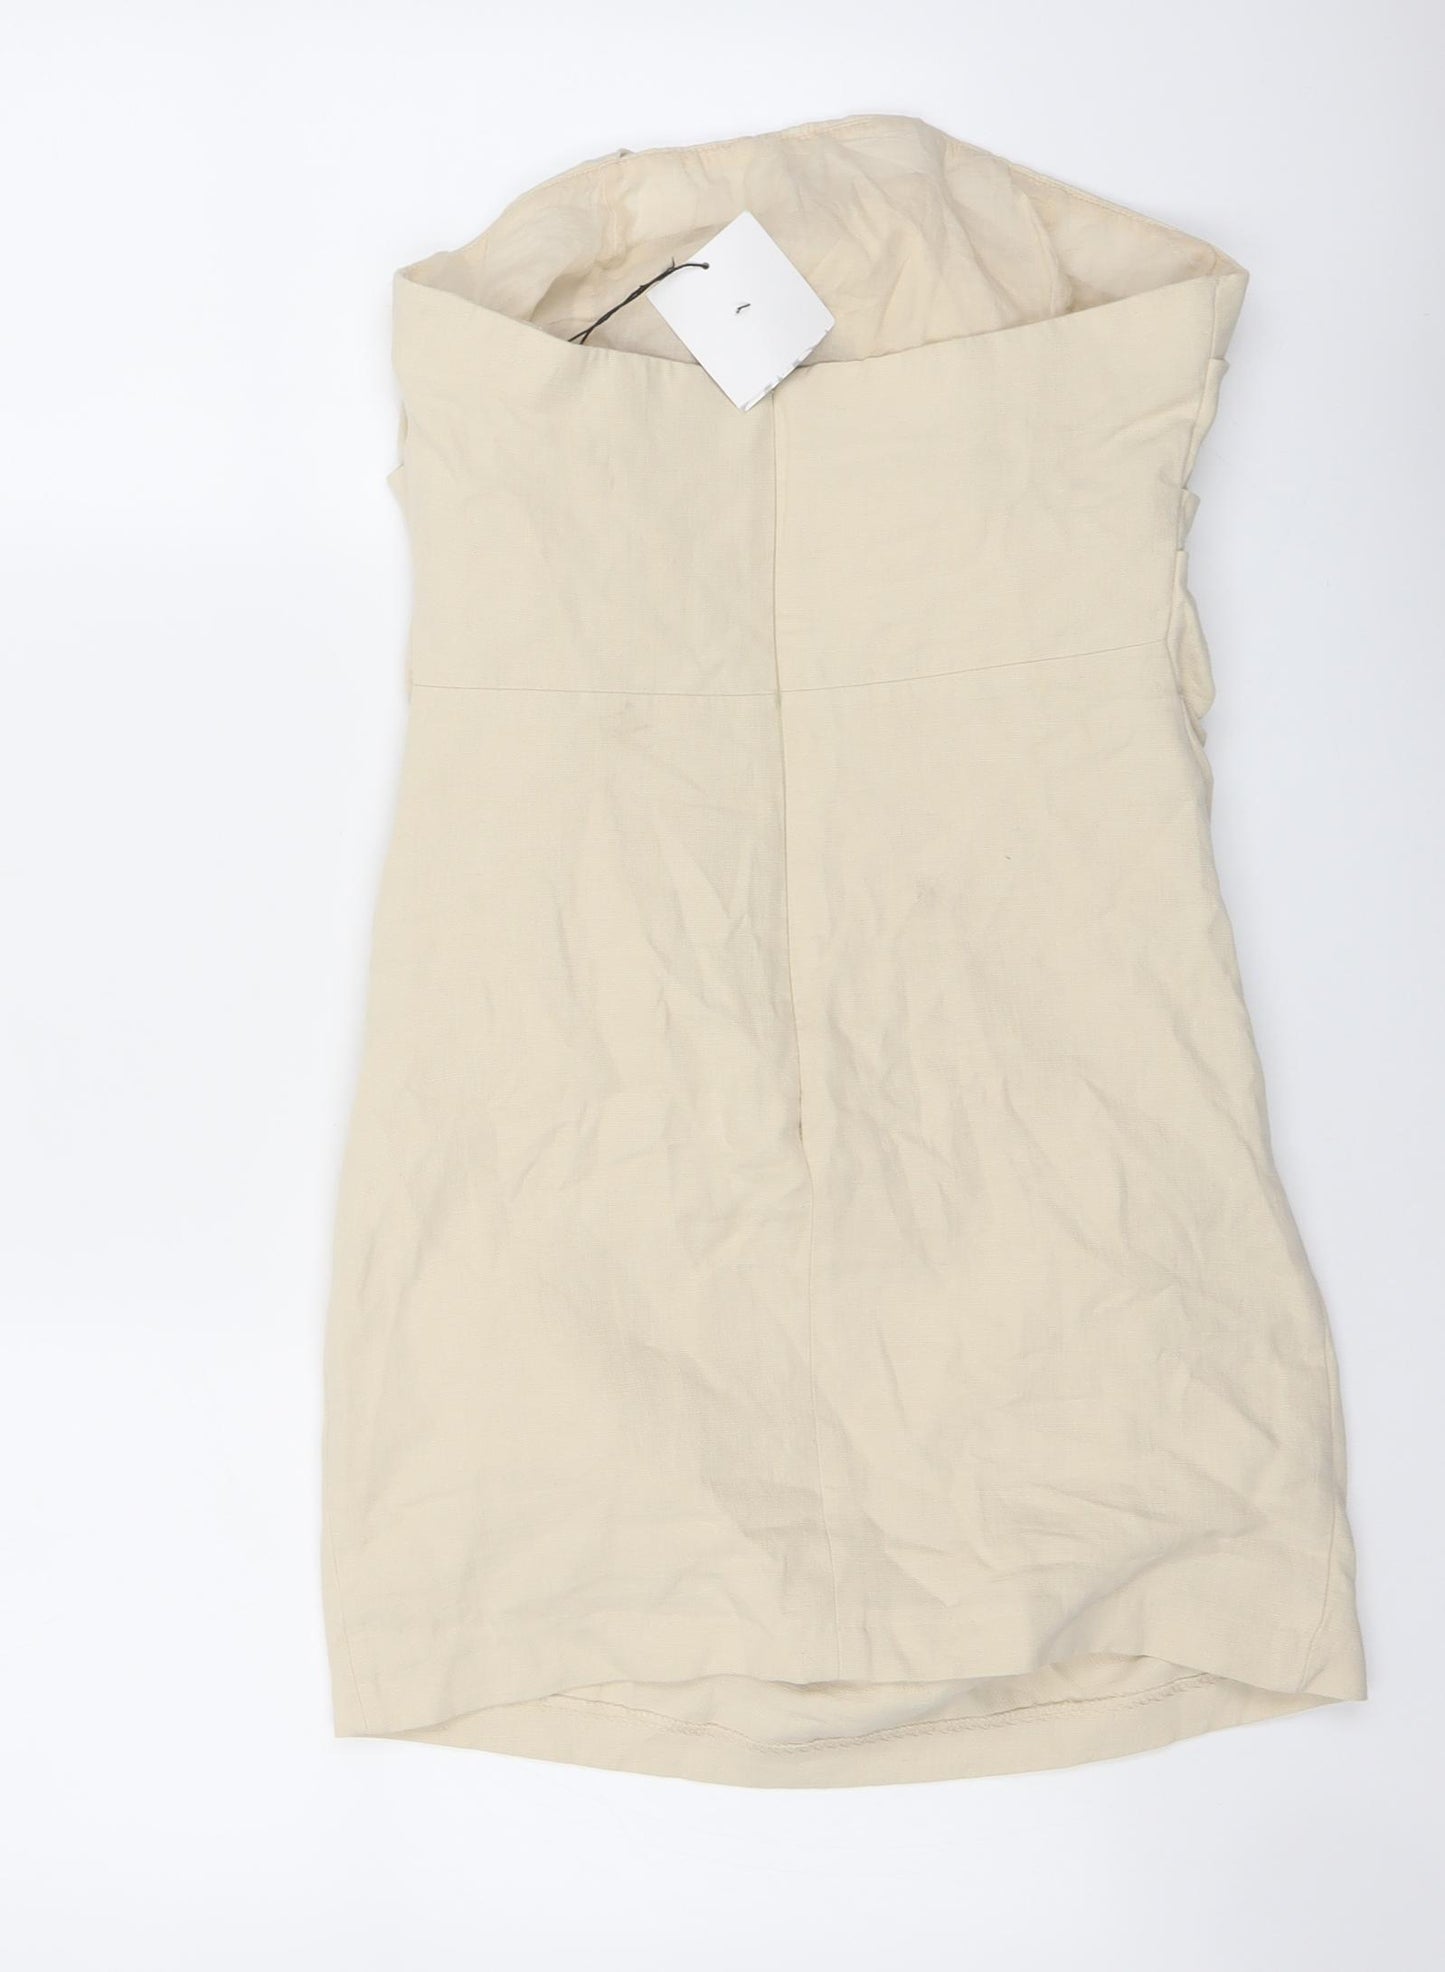 Zara Womens Beige Cotton Bodycon Size S Cowl Neck Zip